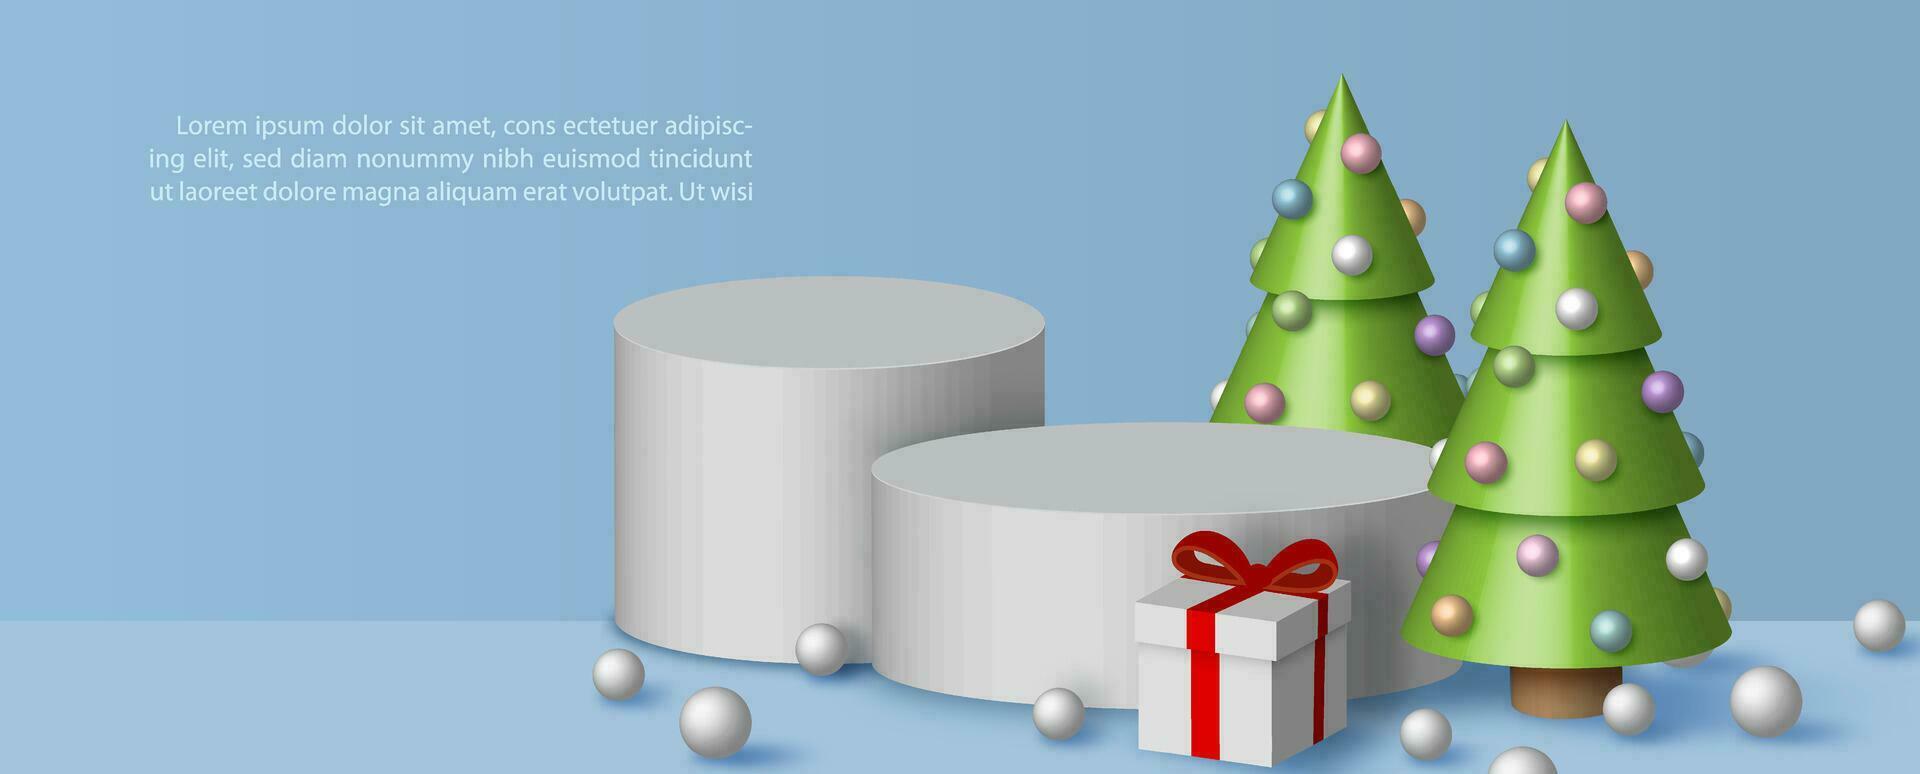 Poster Werbung mit Produkt Bühne und Dekoration von Weihnachten Feier im 3d Stil auf Blau Hintergrund. alle im Vektor Design.